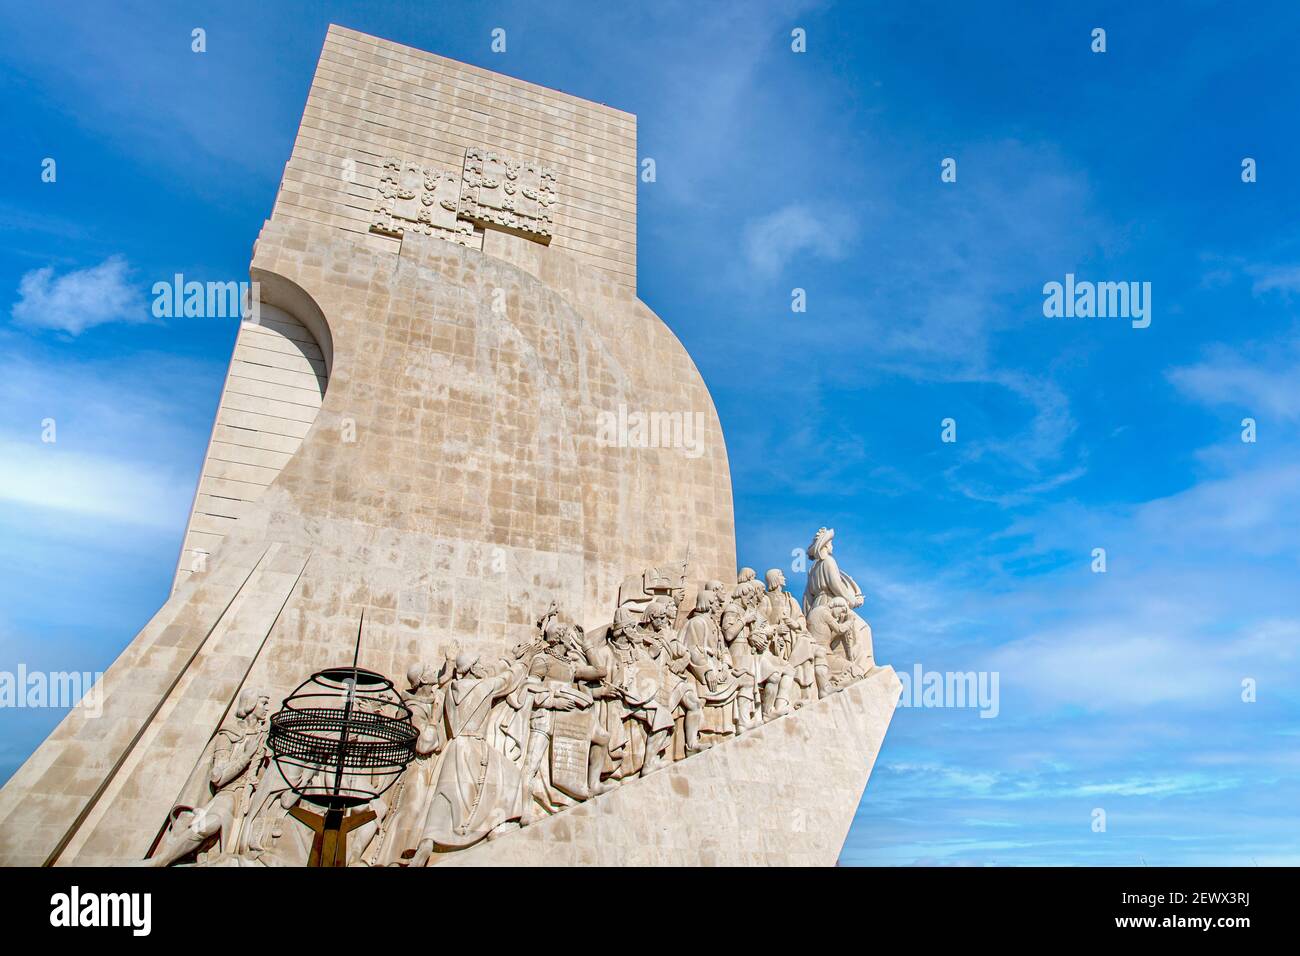 Lisbona, Portogallo - 17 maggio 2020: Monumento delle scoperte (Padrao dos Descobrimentos) sulla riva settentrionale del fiume Tago. Foto Stock